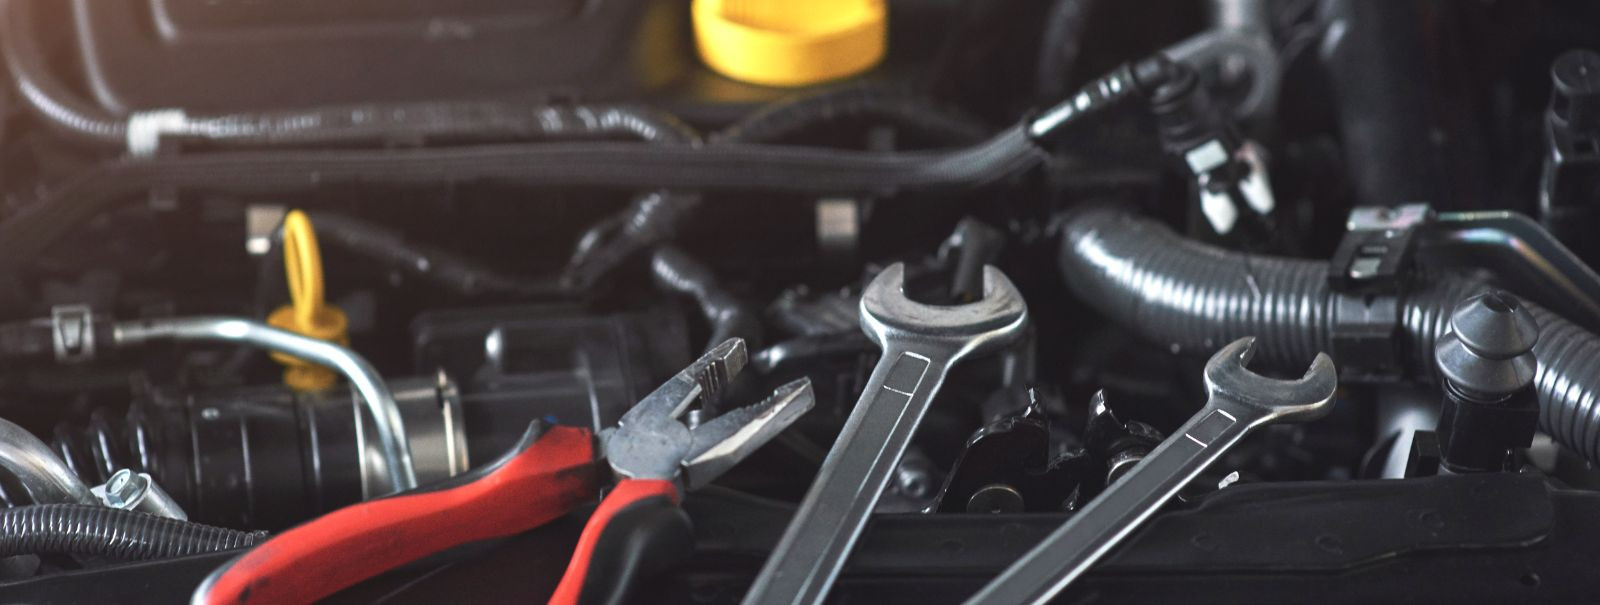 Autoomanikuna on oluline ära tunda märgid, mis viitavad sellele, et sinu auto vajab viivitamatut remonti. See on oluline ohutuse tagamiseks, suuremate kahjustus